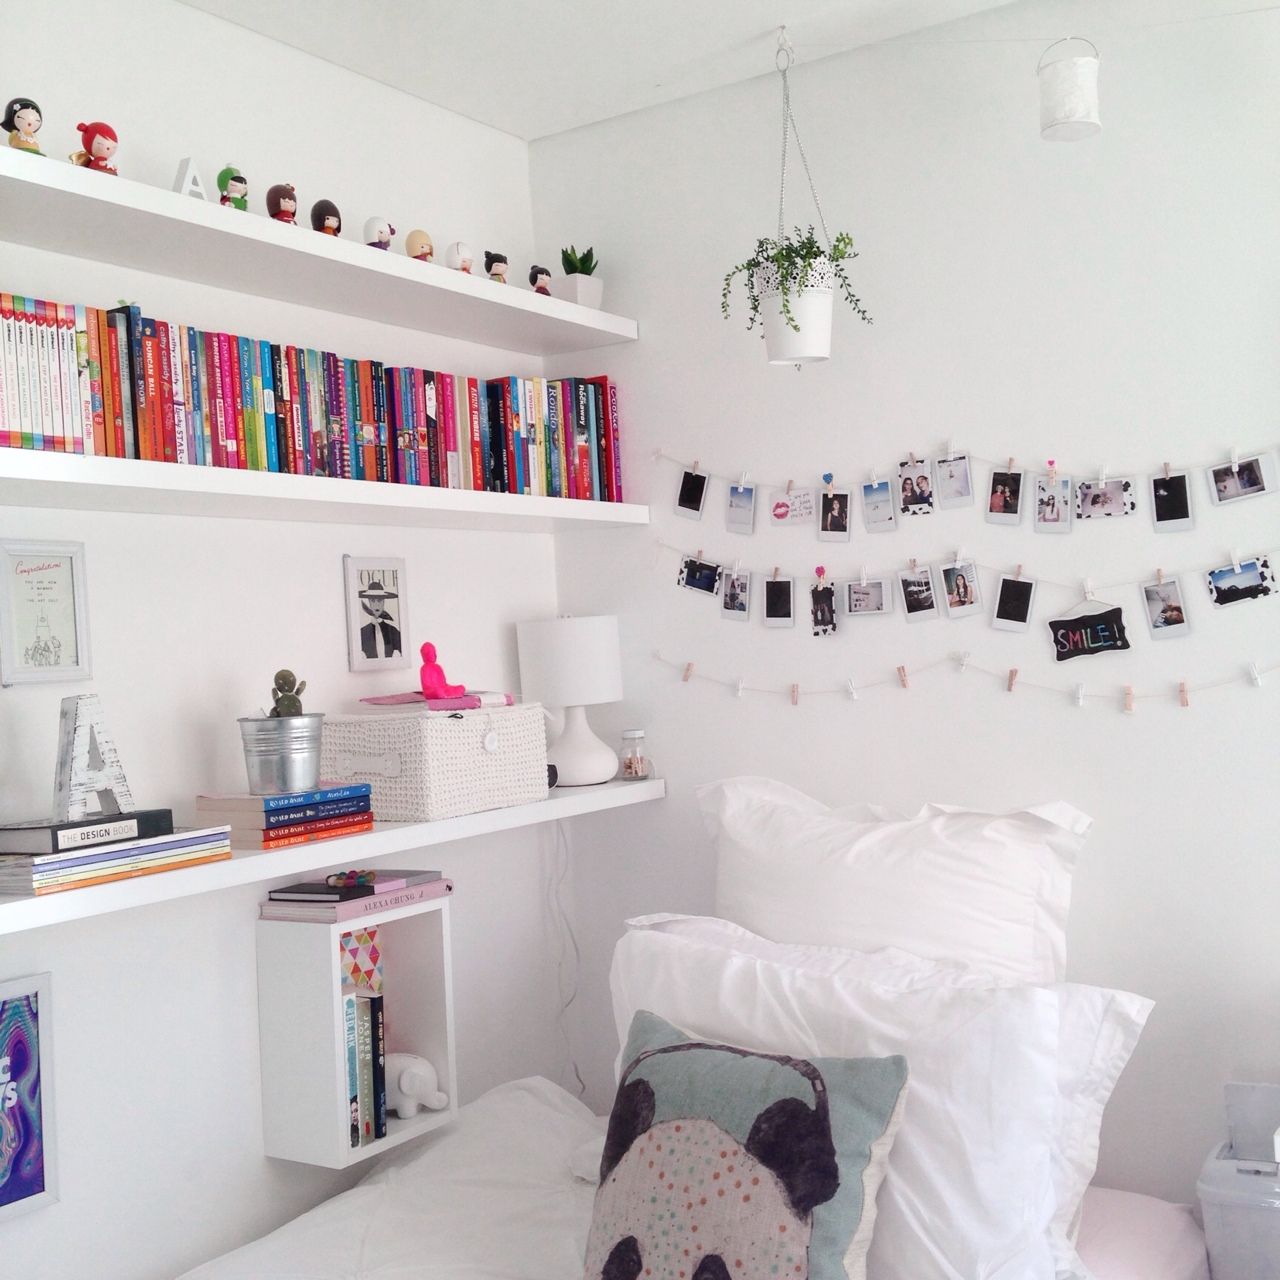 Dekorace místnosti Tumblr s obrázky a knihami